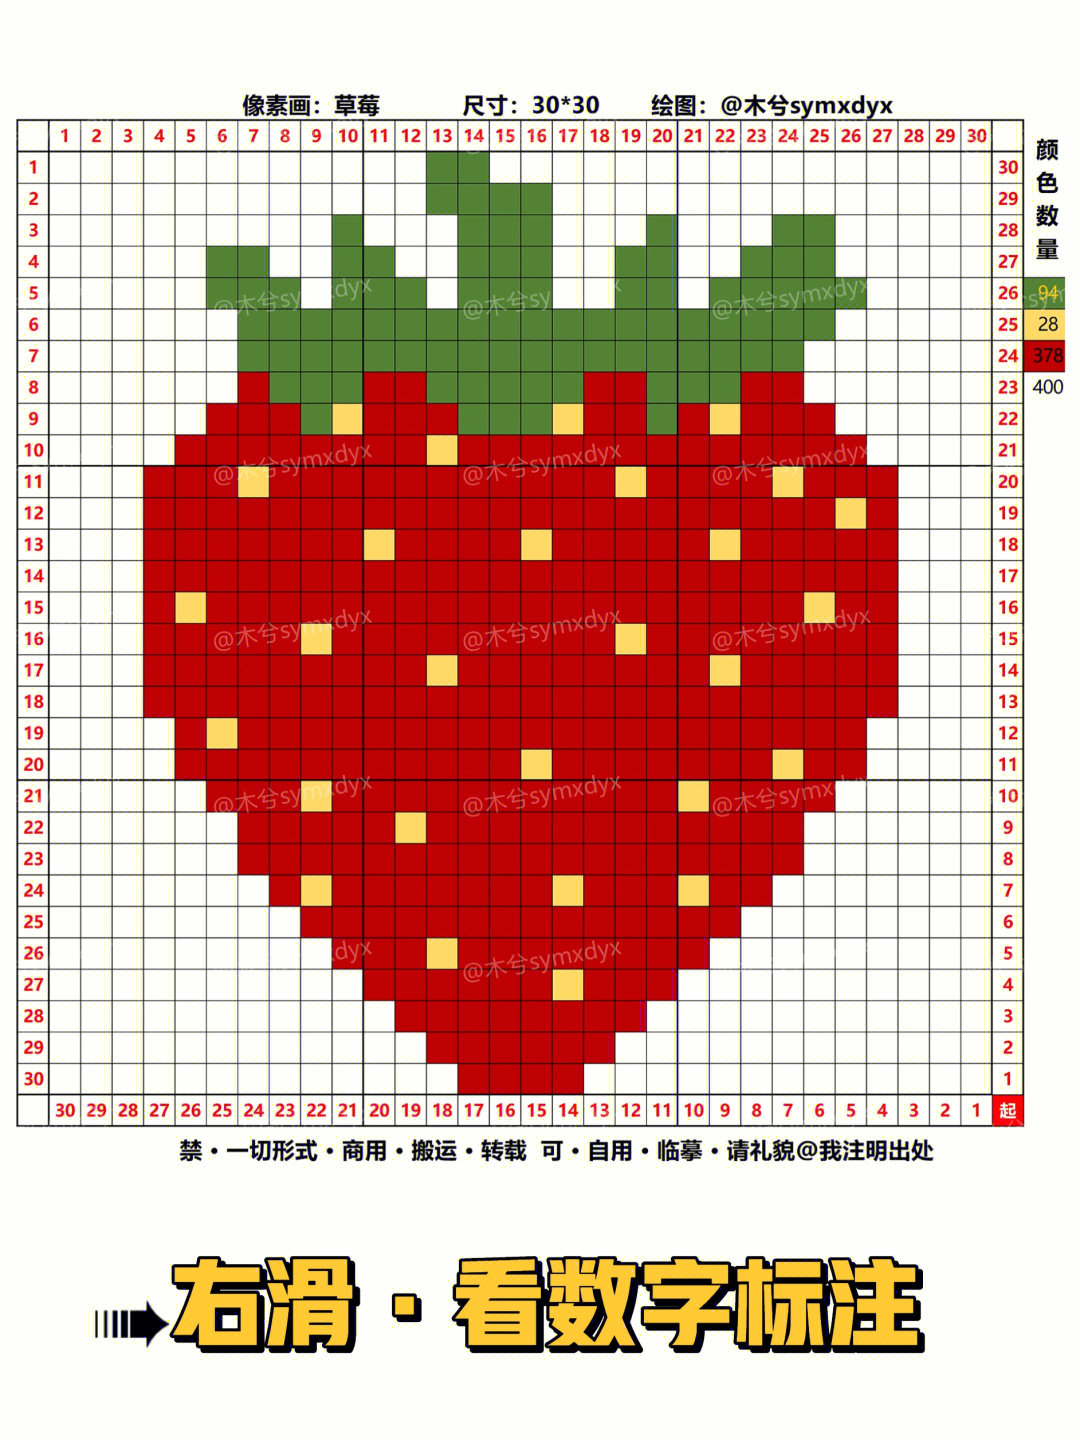 网格画草莓图片